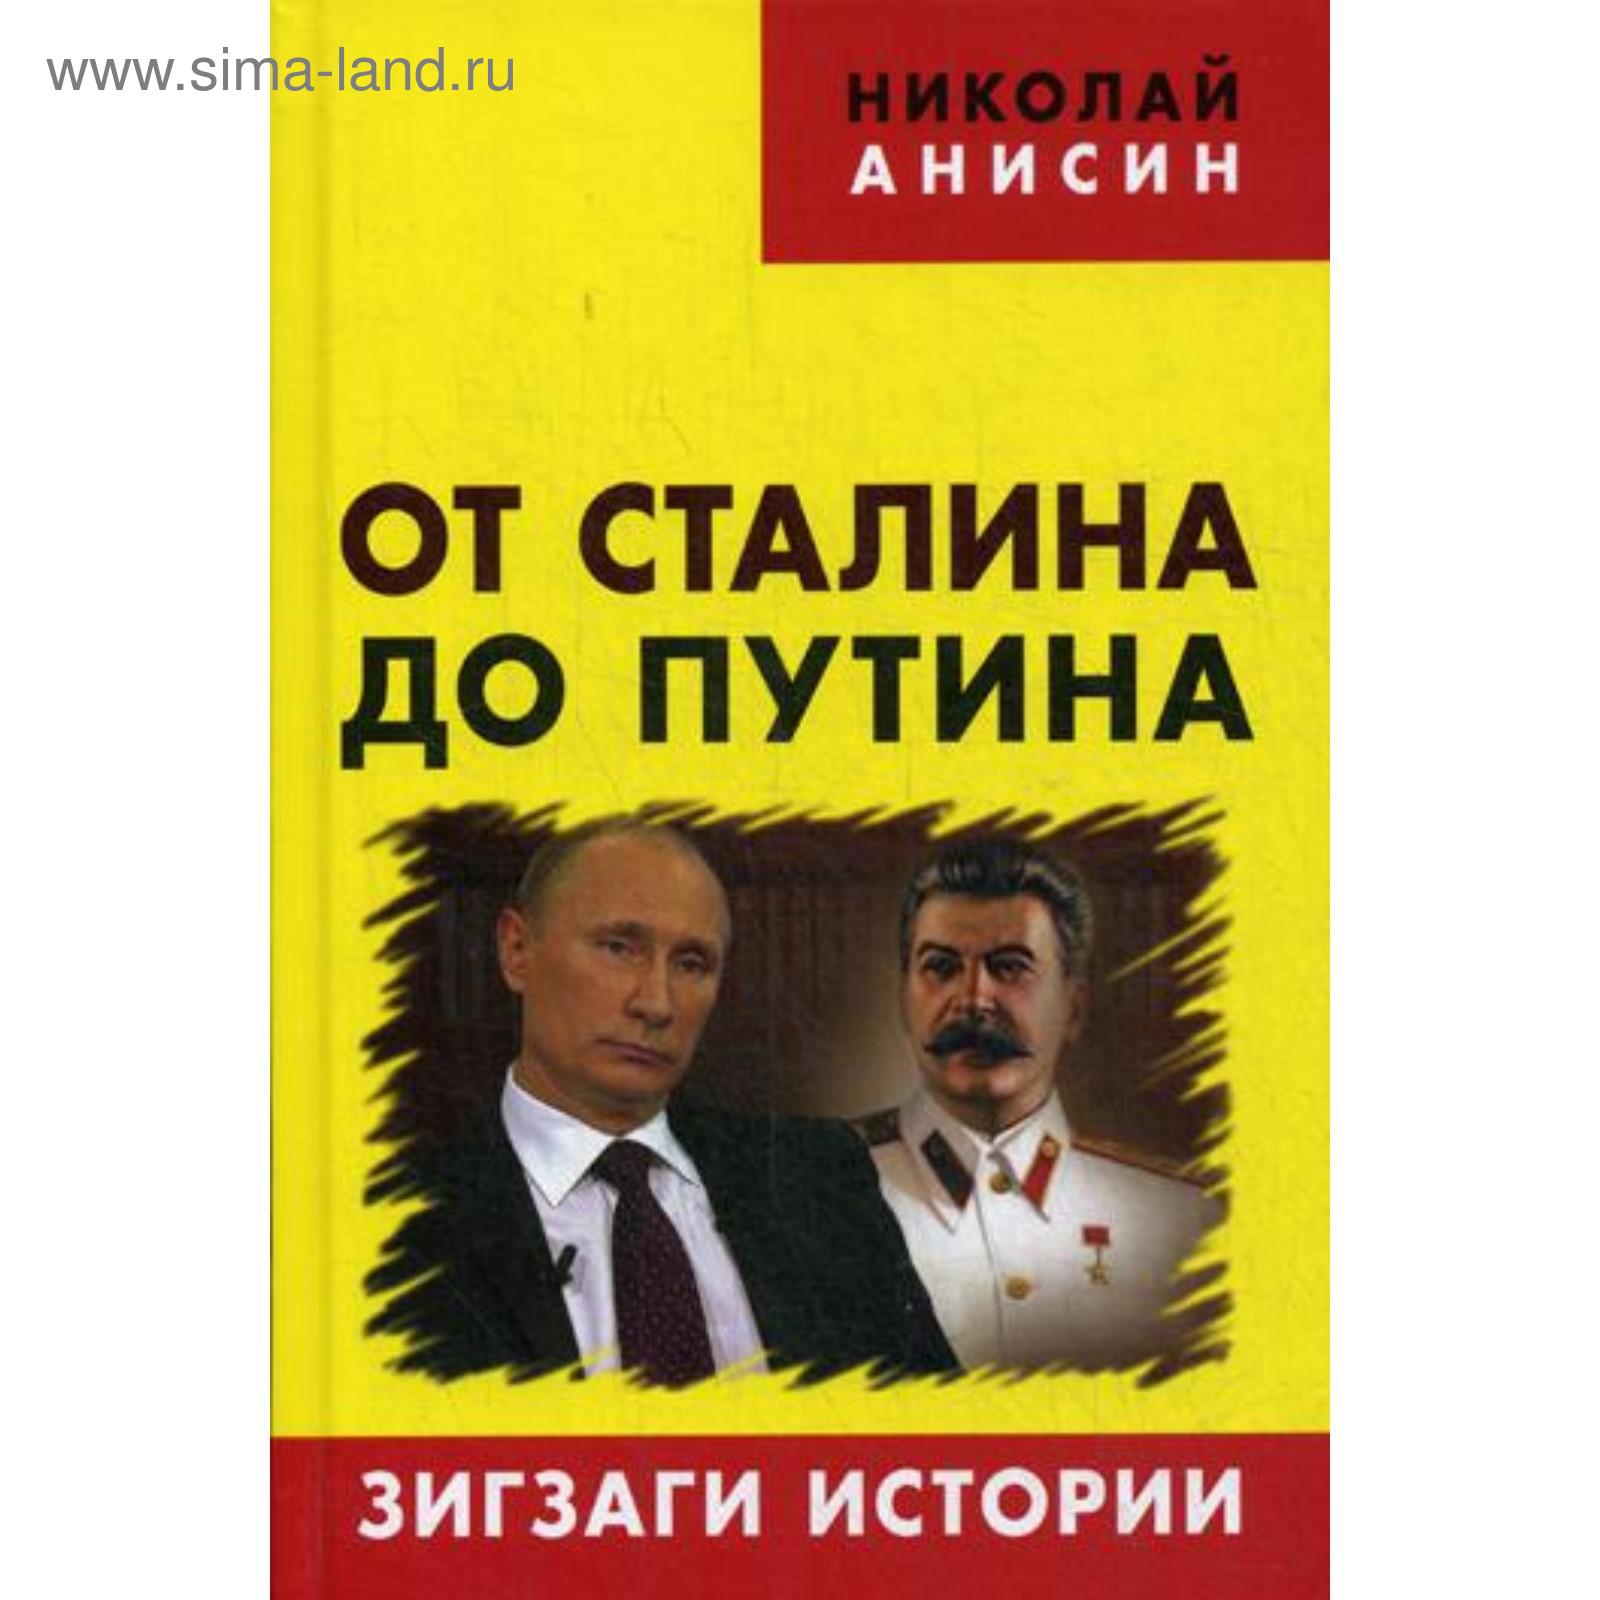 Ot Stalina Do Putina Zigzagi Istorii Anisin N 5318602 Kupit Po Cene Ot 461 00 Rub Internet Magazin Sima Land Ru